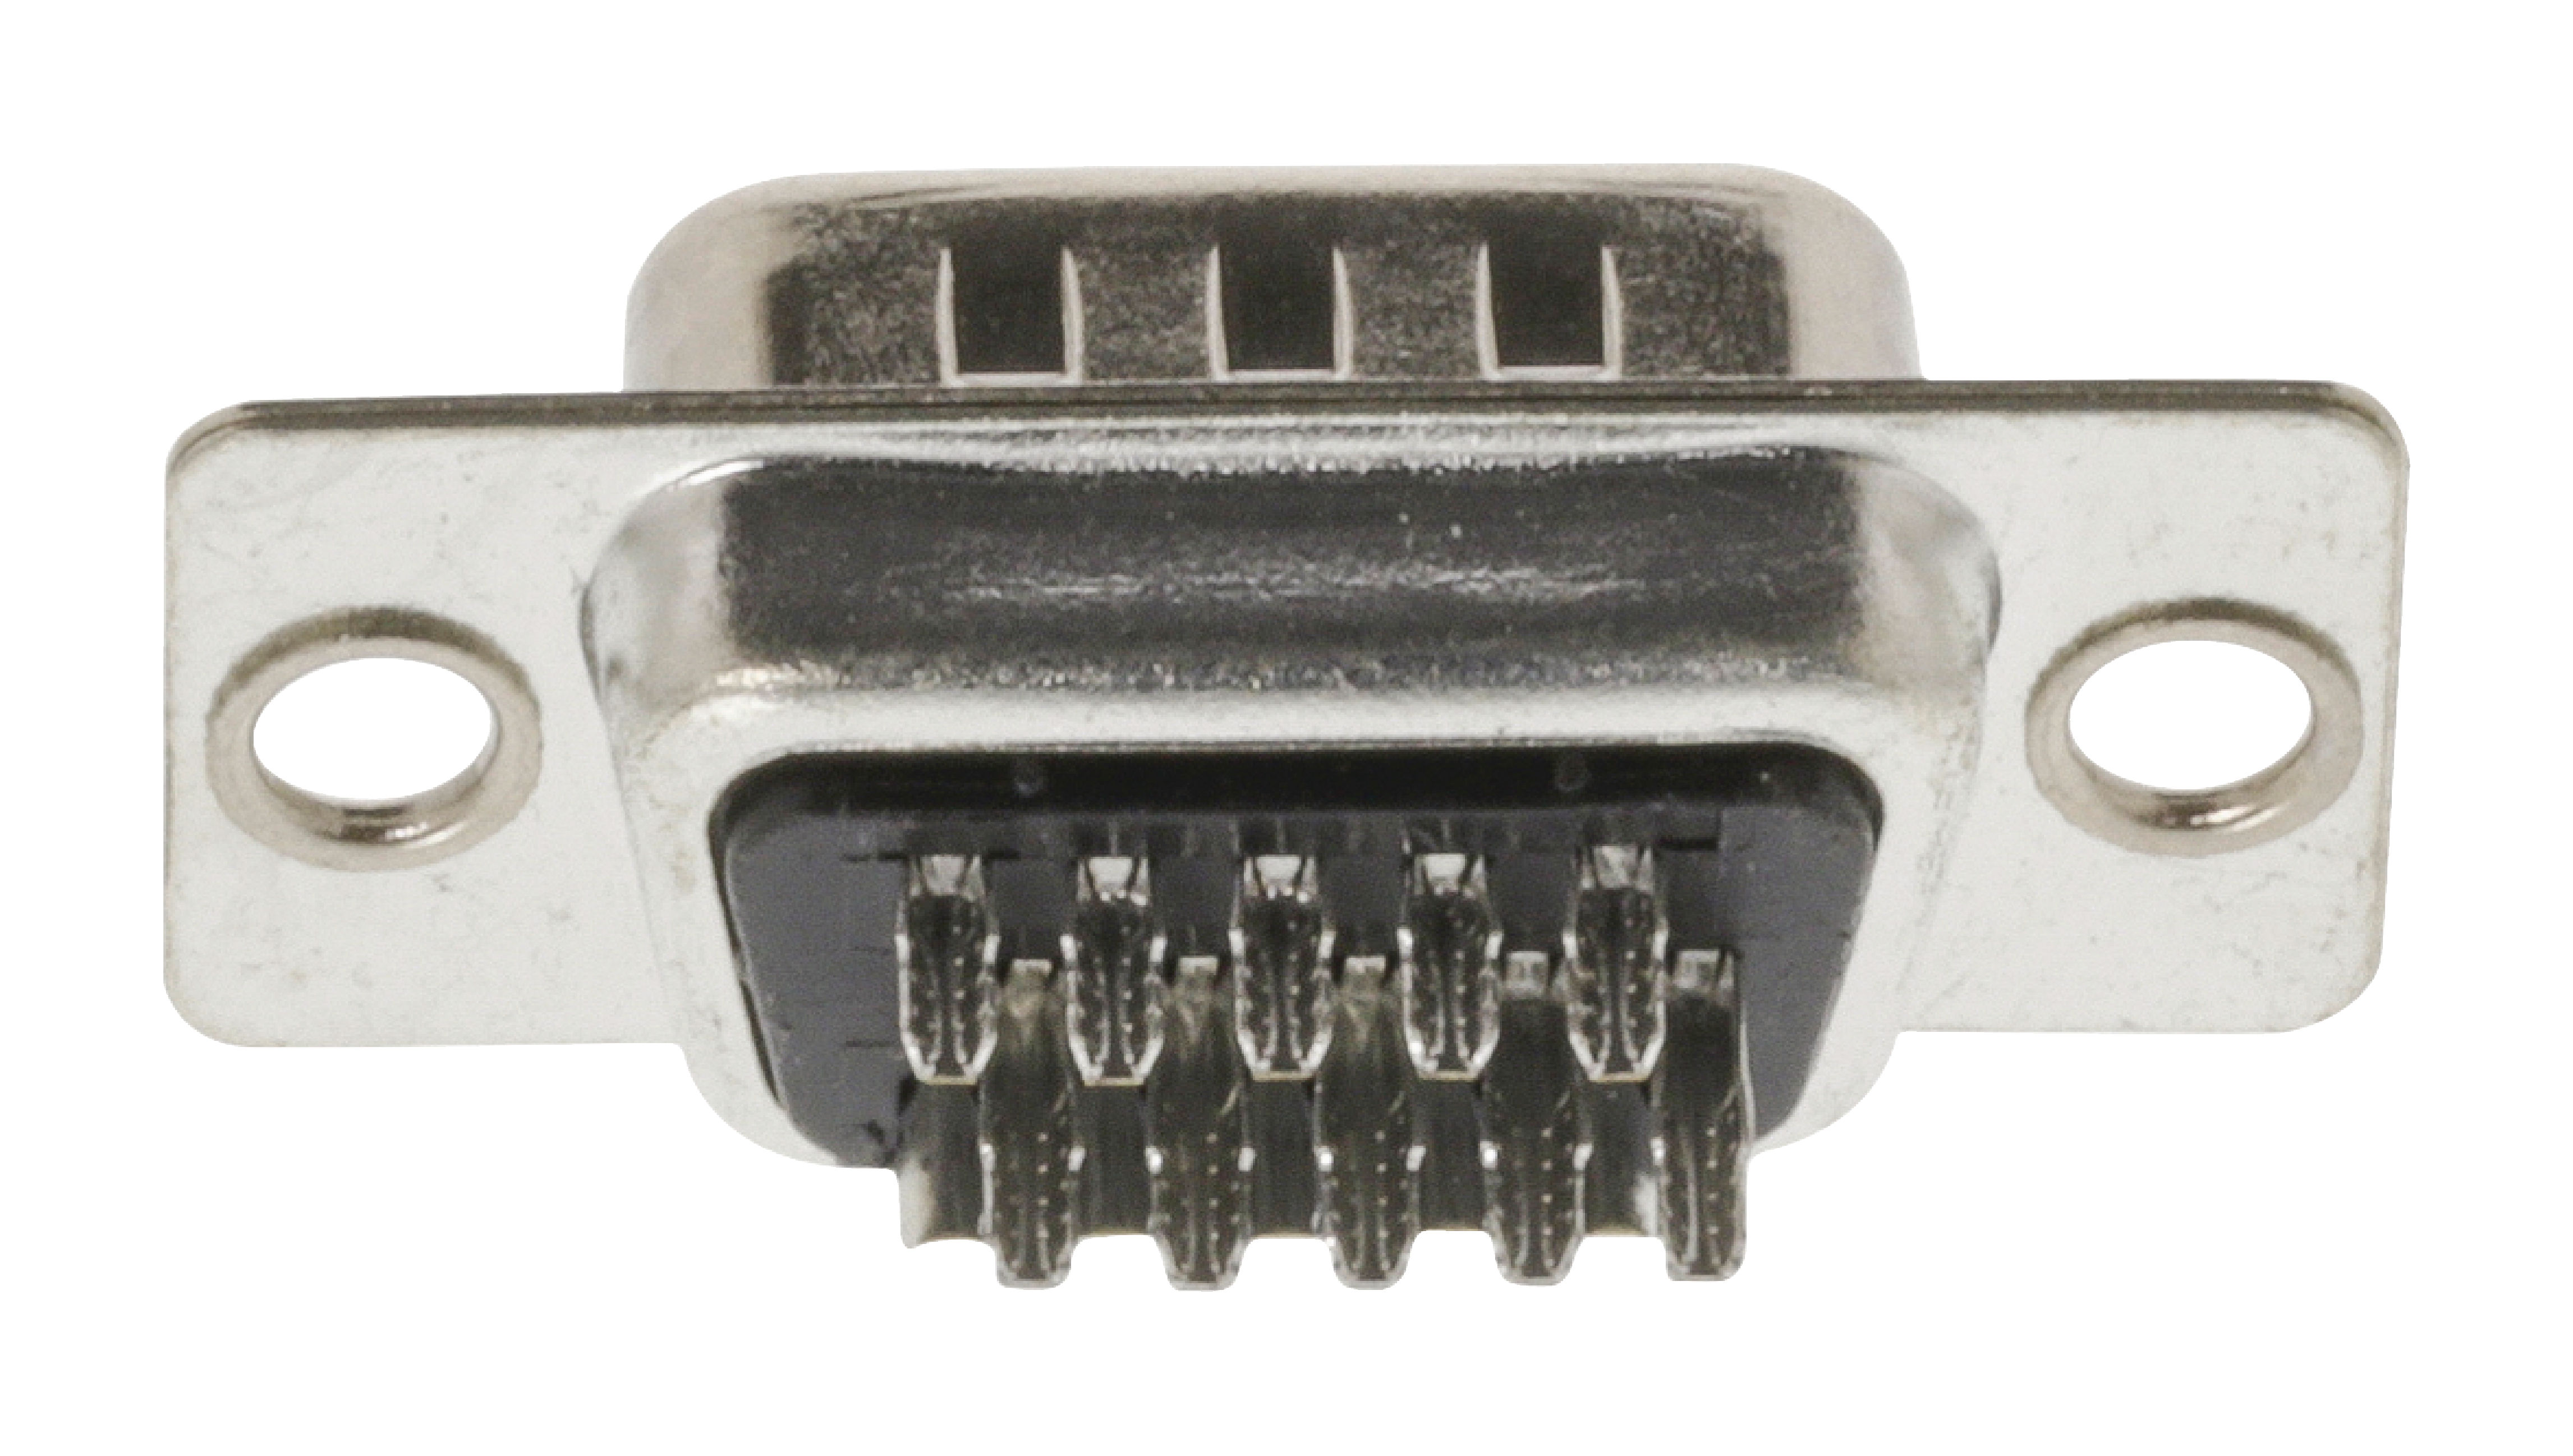 Connecteur d male 15 broches - haute densite - montage chassis